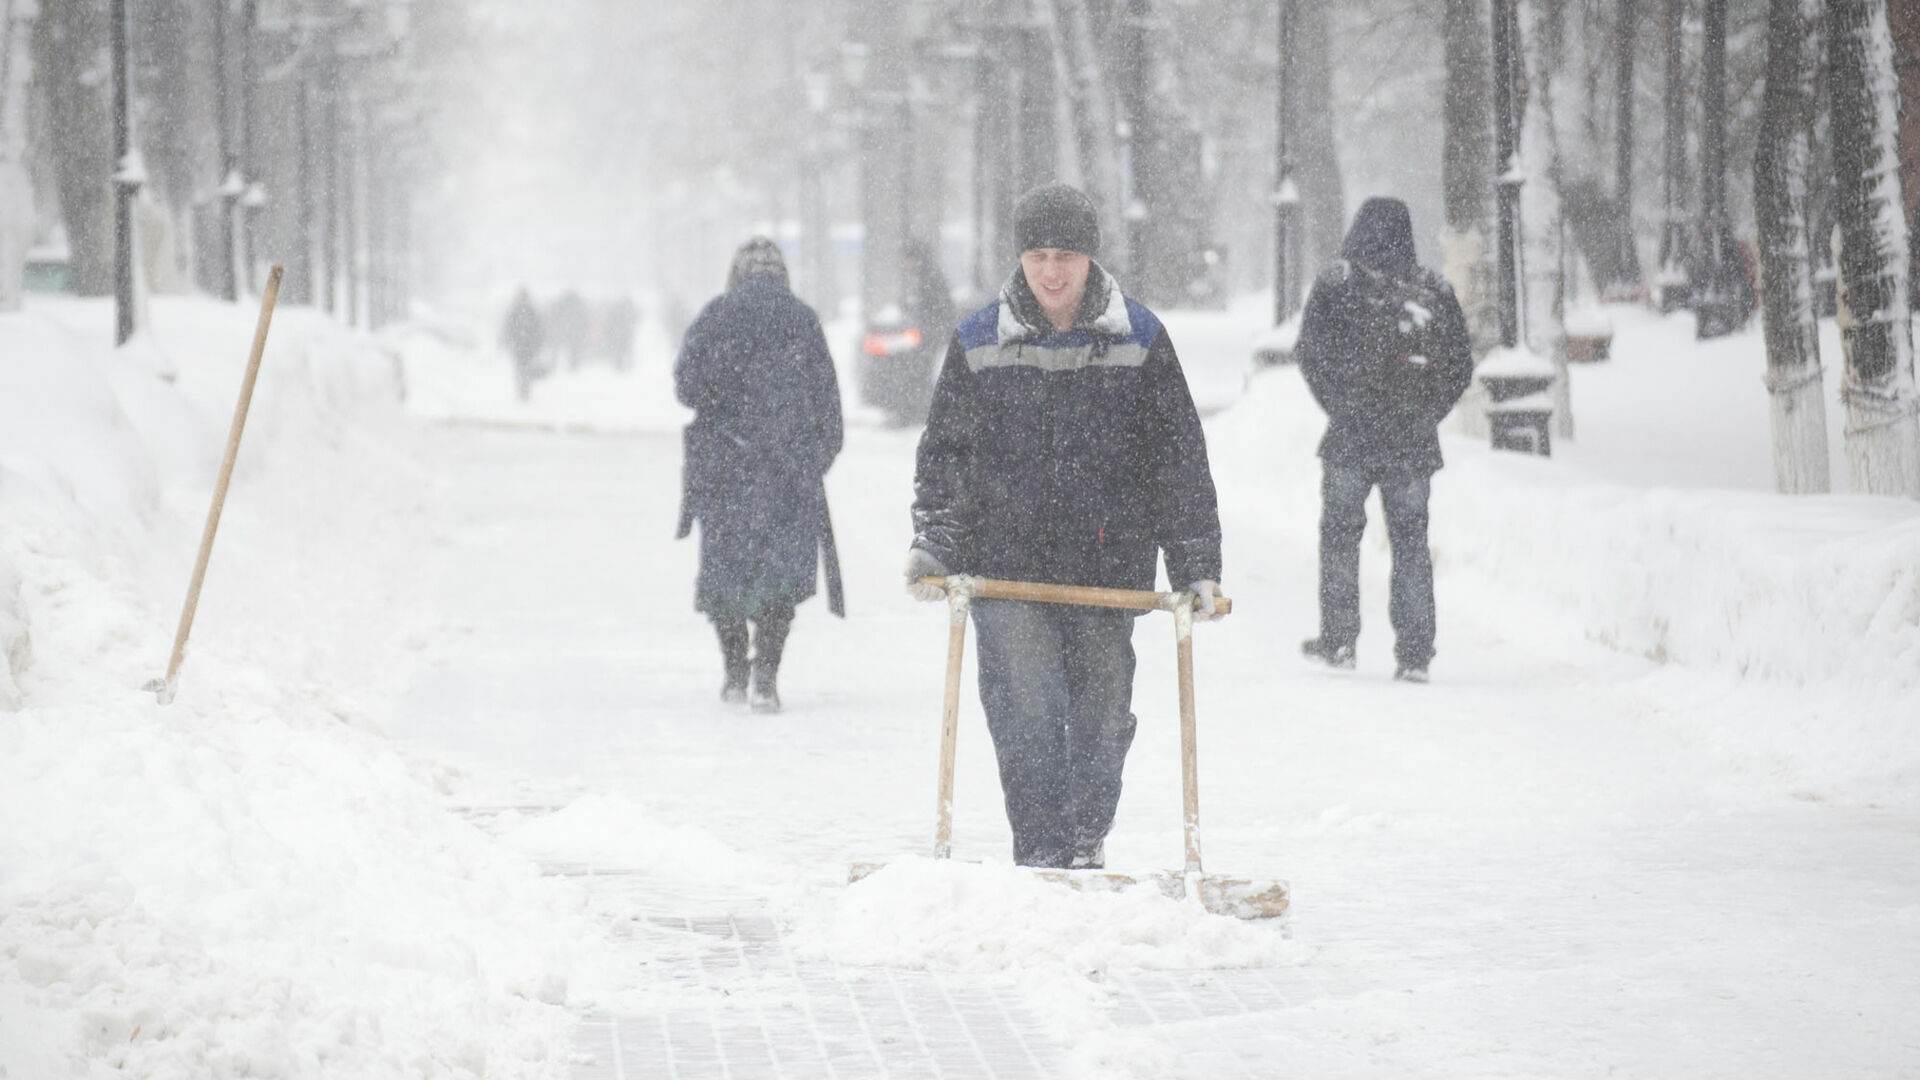 Нижегородская мэрия оценила уборку снега на удовлетворительно